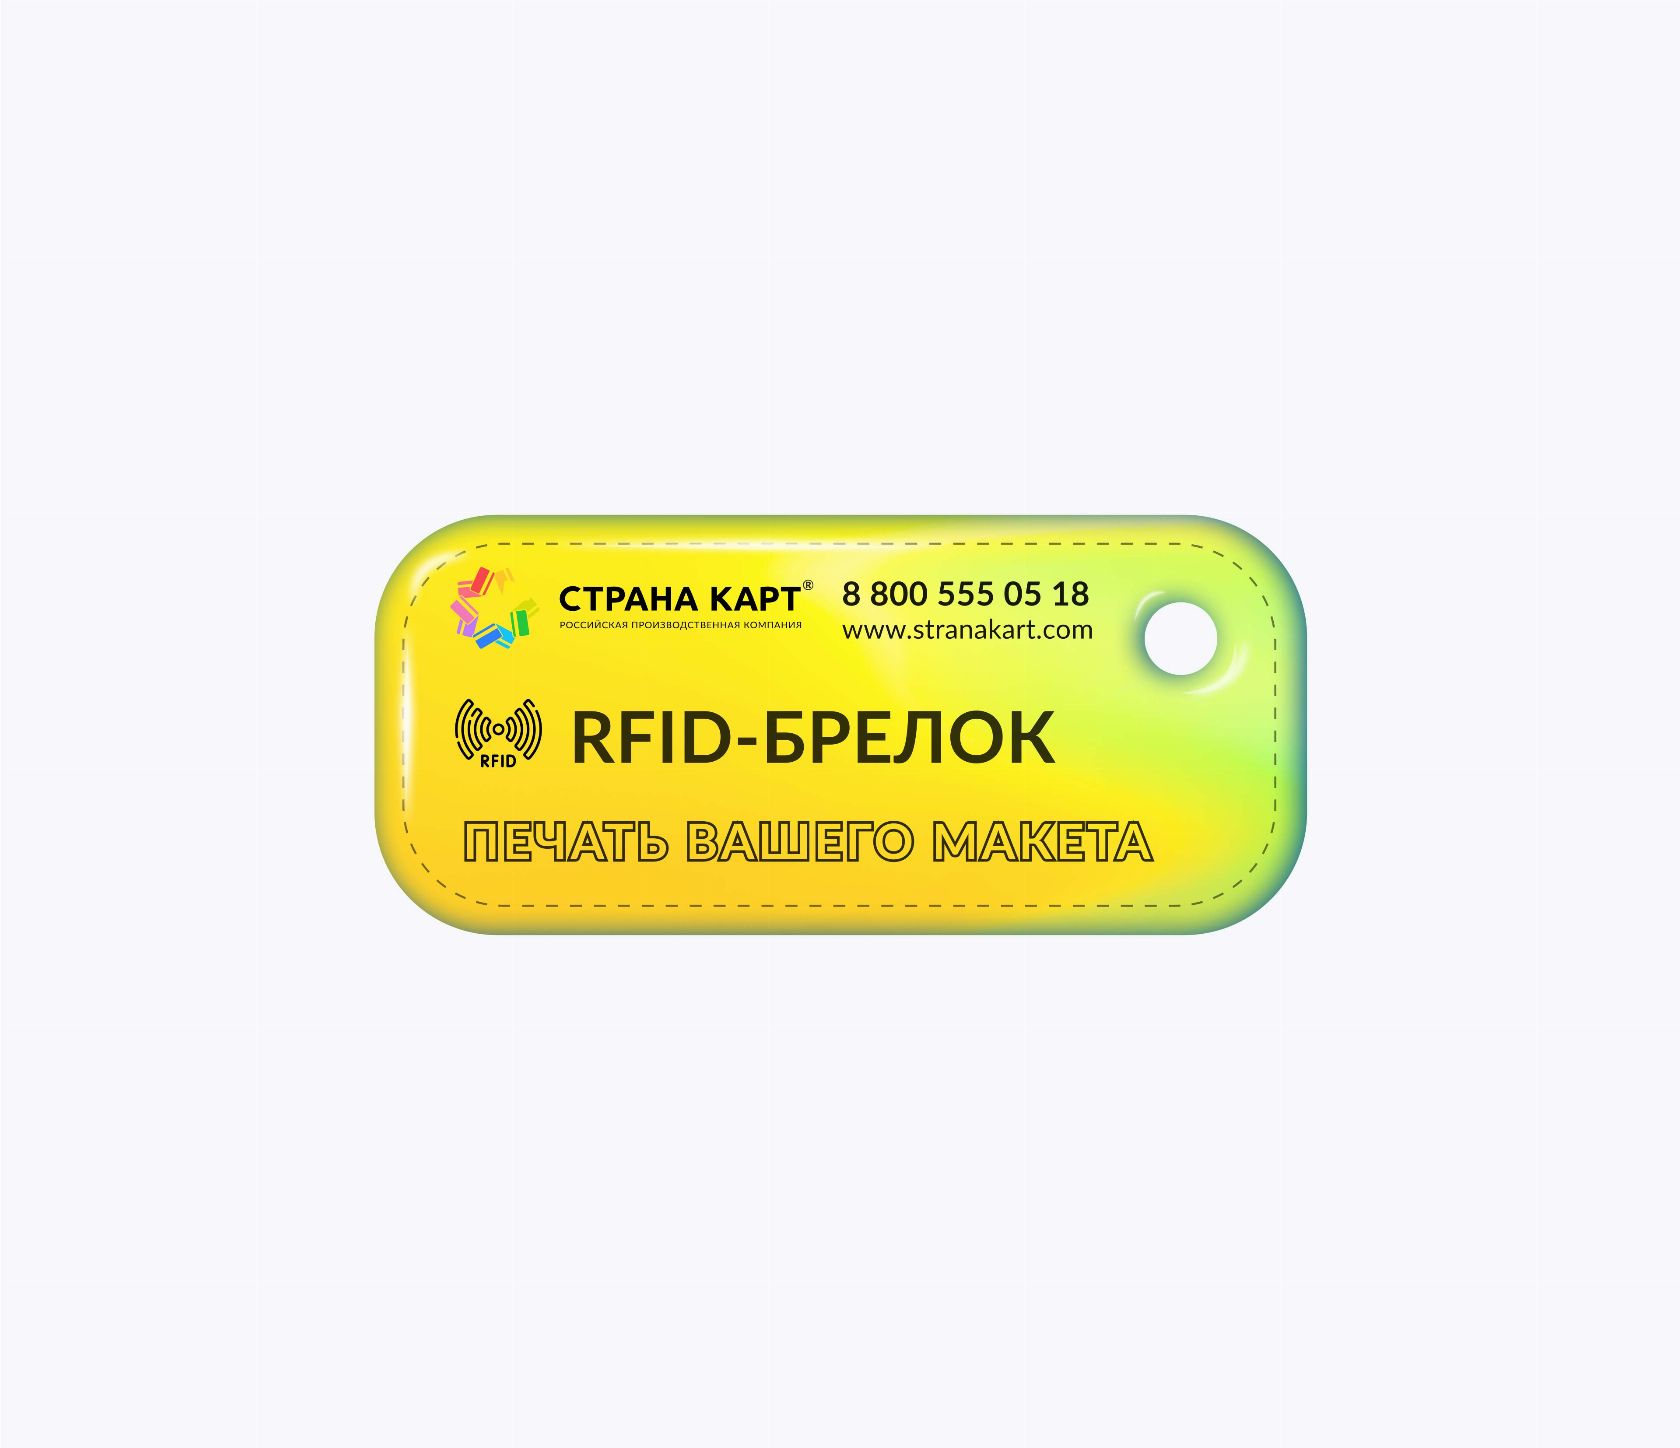 Прямоугольные мини RFID-брелоки NEOKEY® с чипом NXP ICODE SLIX RFID-брелоки NEOKEY® с чипом NXP ICODE SLIX и вашим логотипом